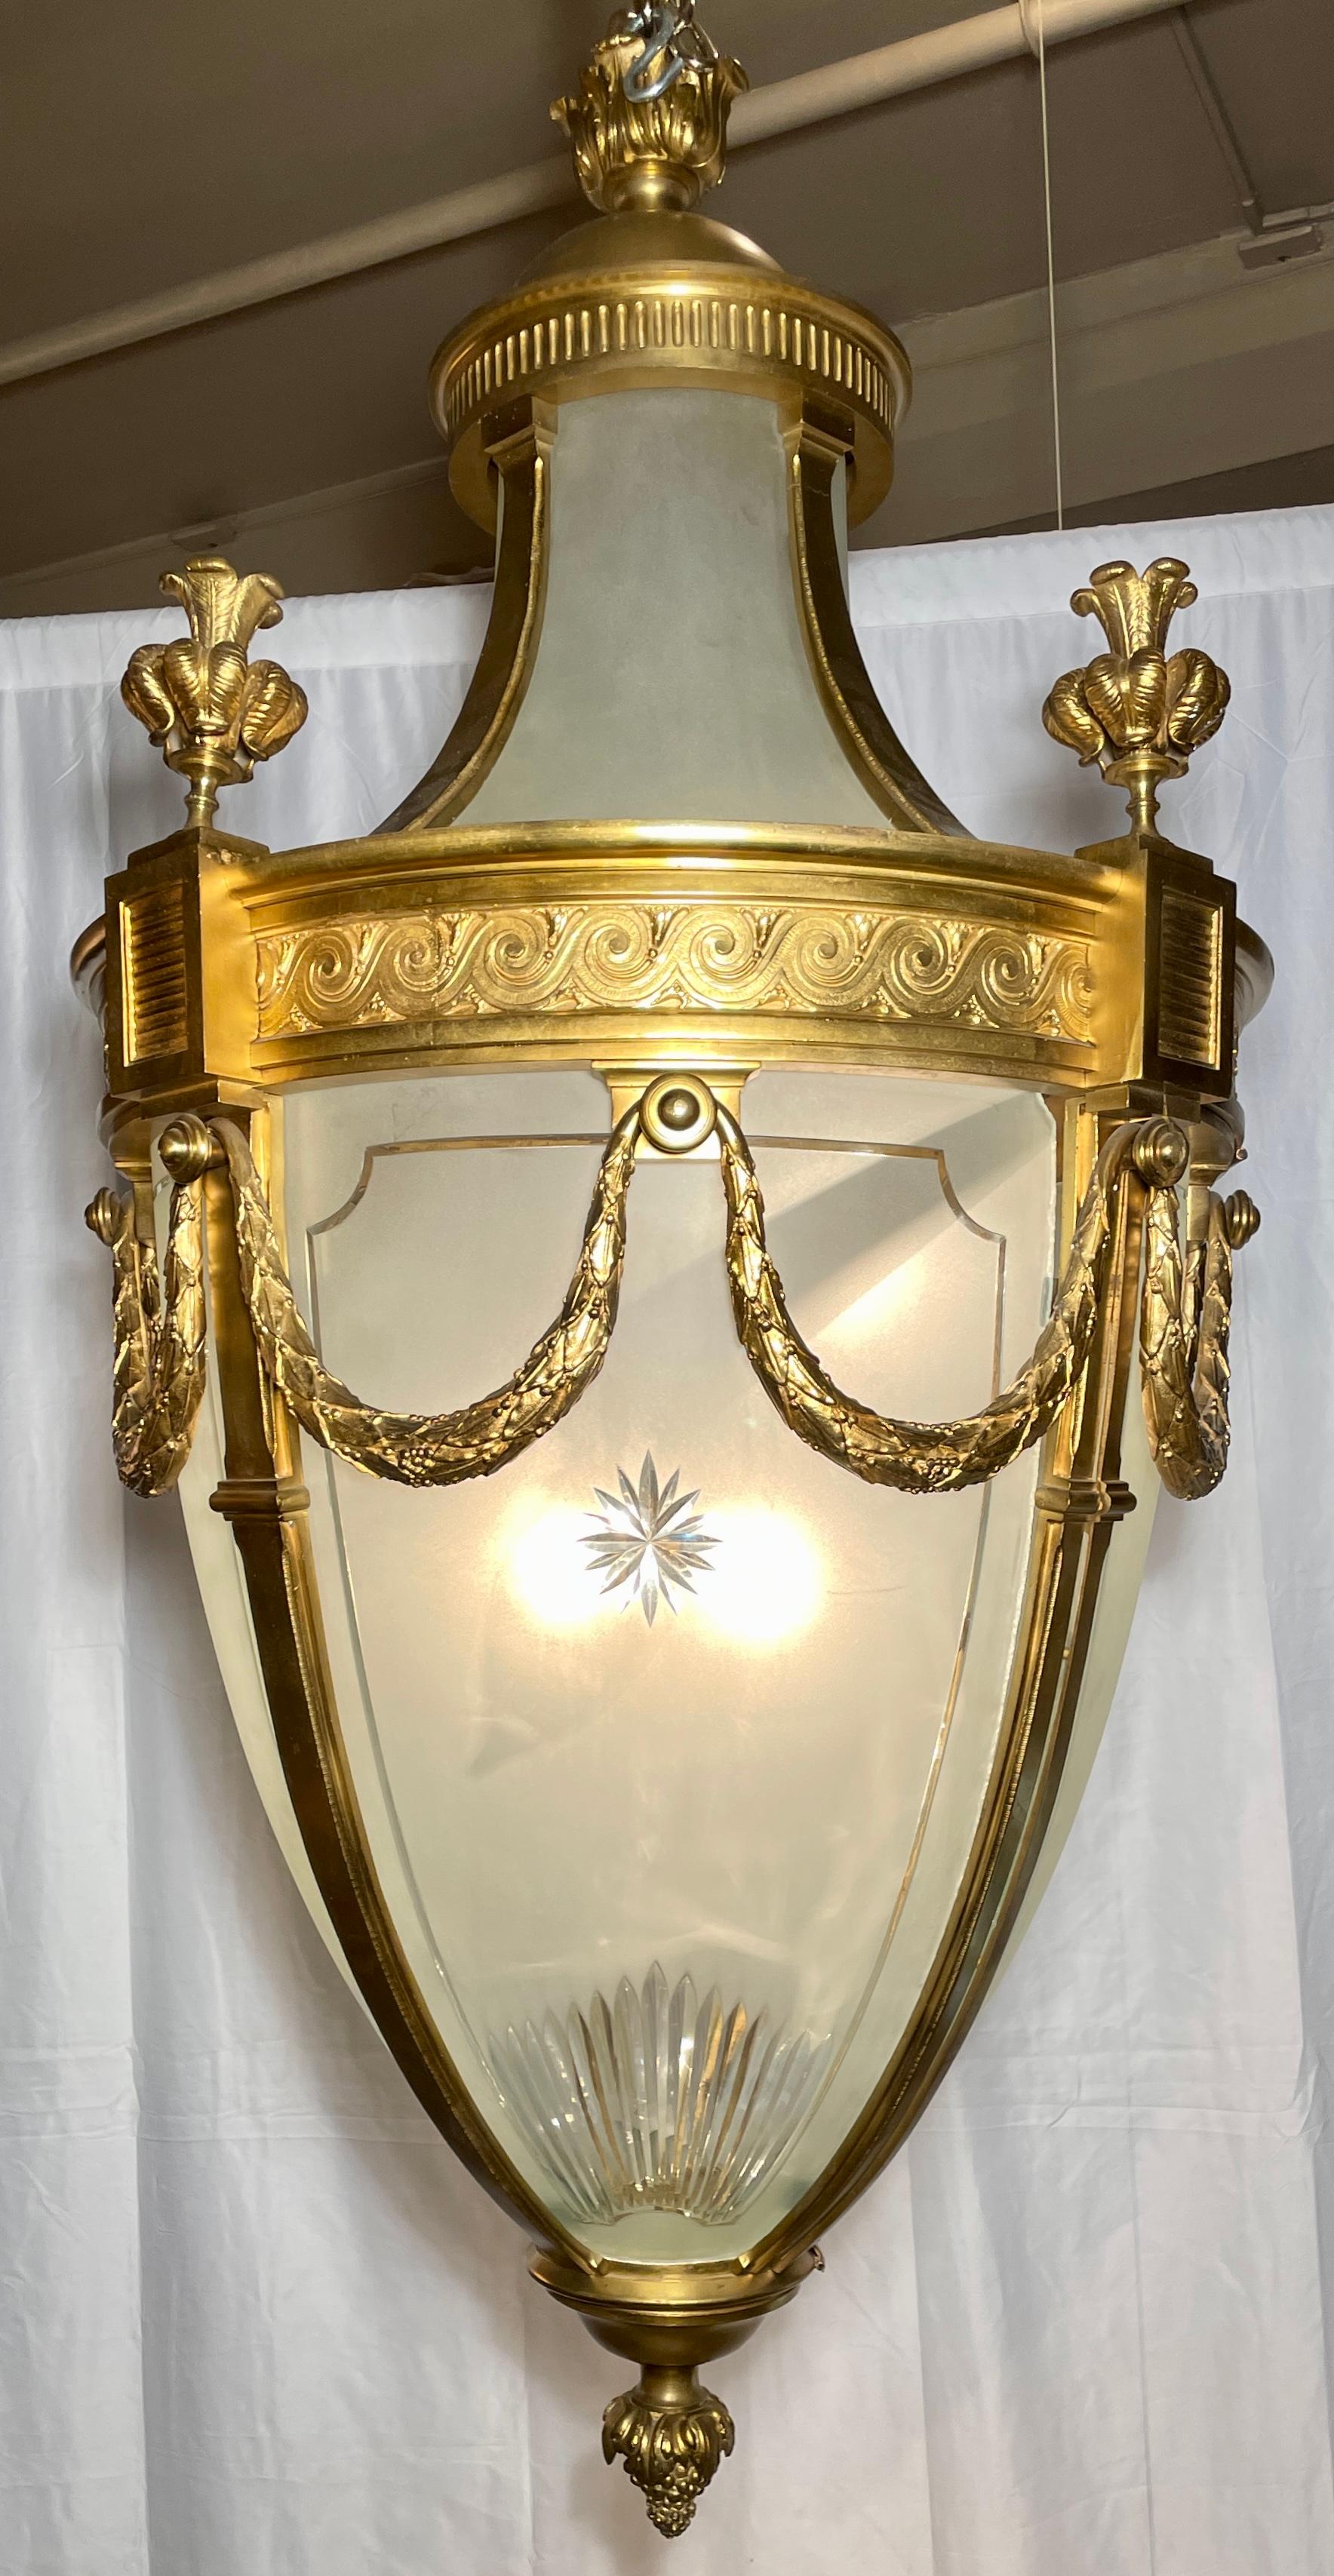 Grand Scale Antike Französisch Belle Époque Gold Bronze & geätztem Glas Laterne, CIRCA 1890.
Prächtiges Design mit aufwändiger Goldbronze und Radschnitzerei. 